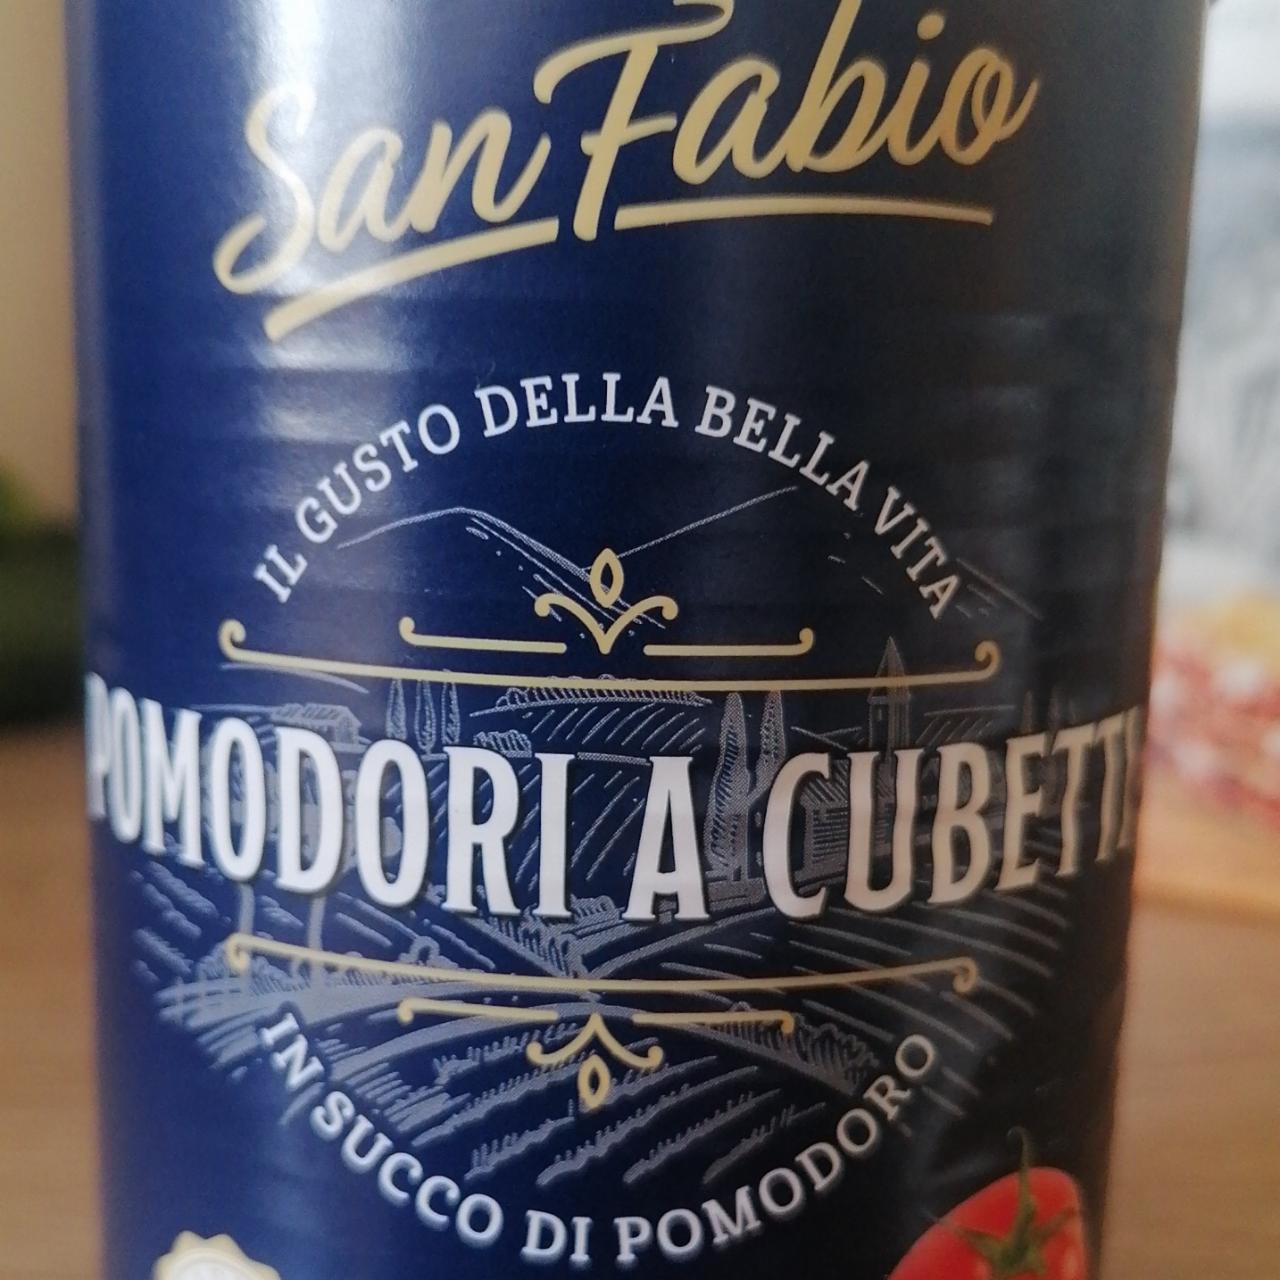 Fotografie - Pomodori a cubetti in succo di pomodoro San Fabio